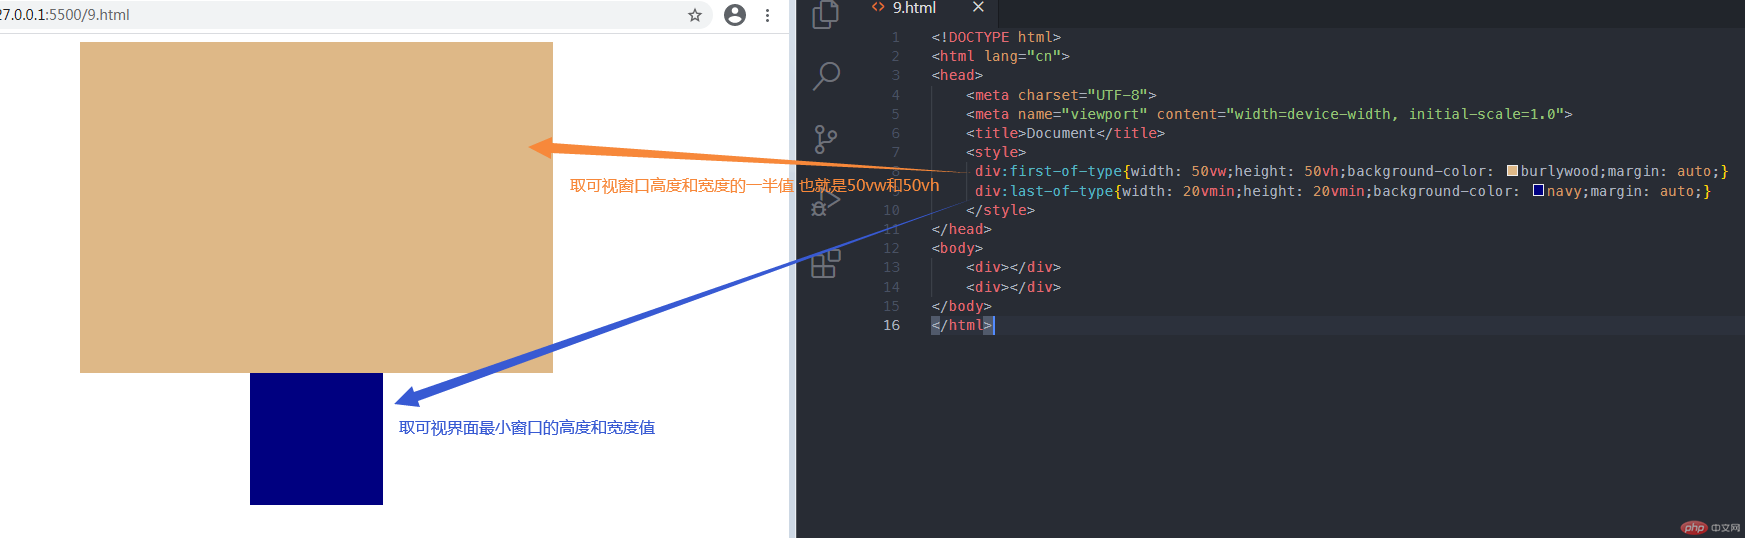 解析CSS单位px、em、rem、vh、vw、vmin、vmax来实现页面的布局 - CSS - php中文网博客